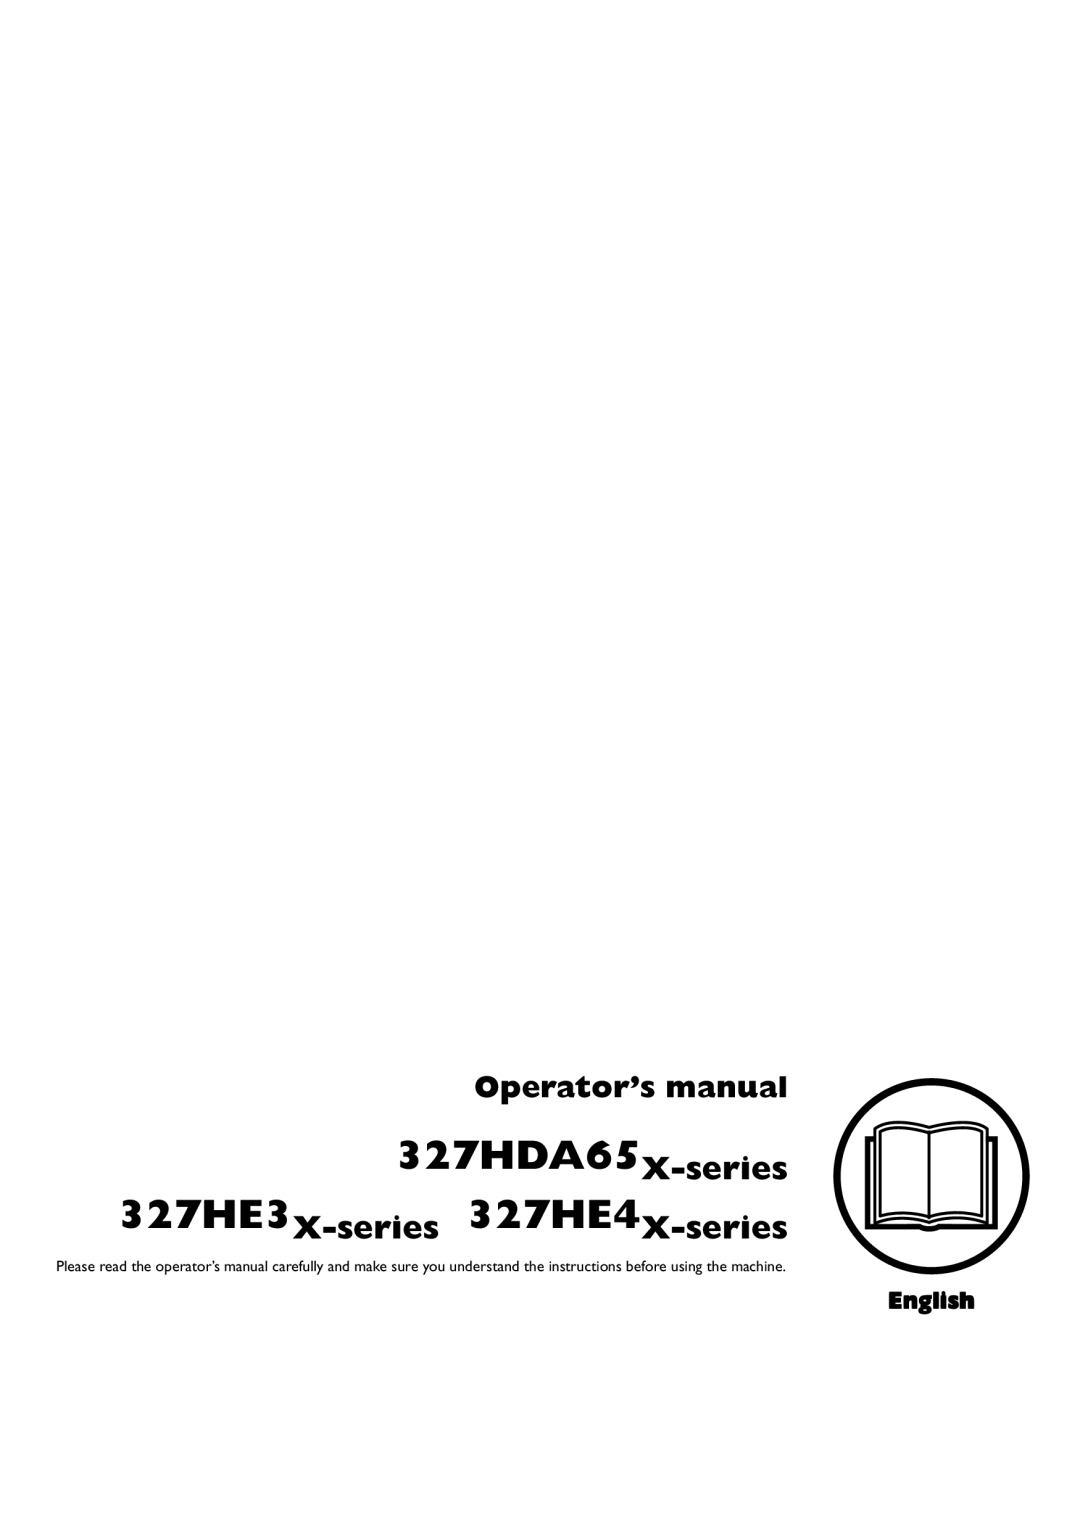 Husqvarna manual Operator’s manual, 327HDA65X-series, 327HE3X-series 327HE4X-series, English 